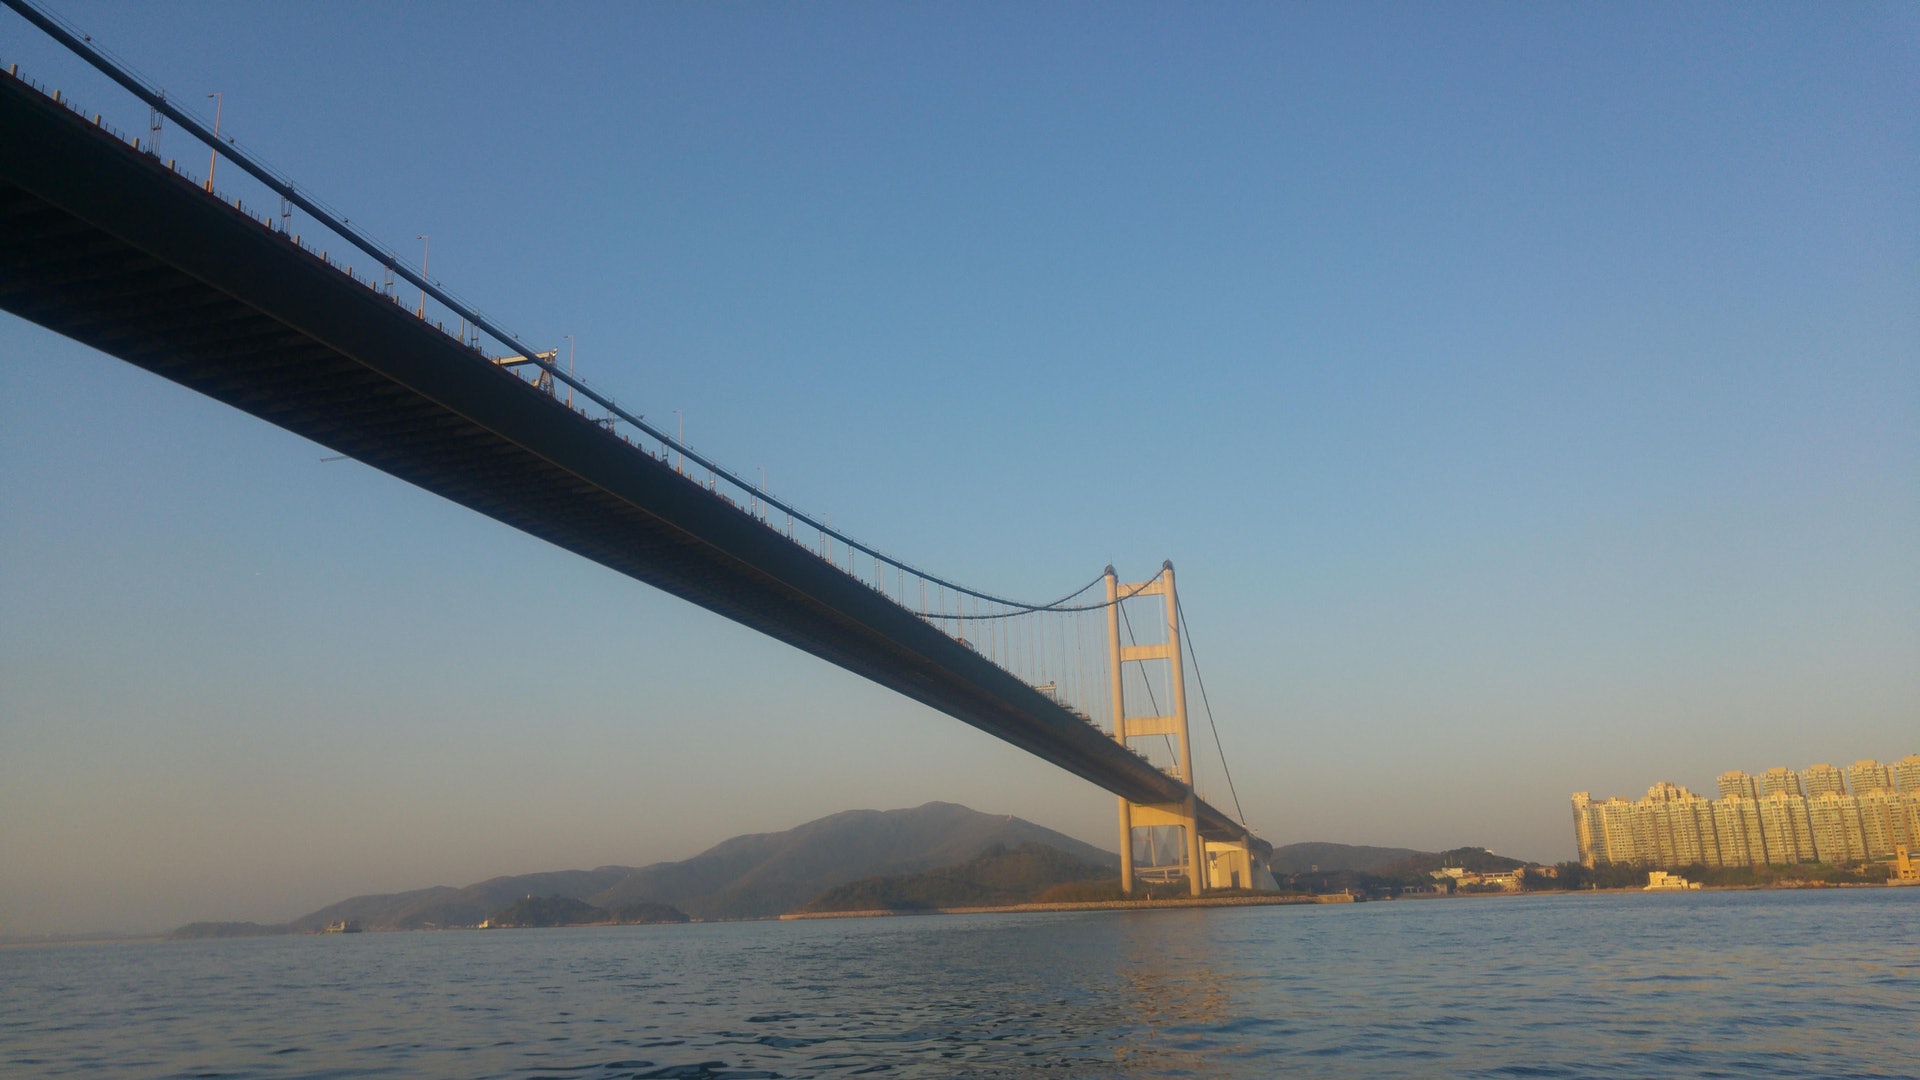 政府增青馬大橋通航高度限制至57米先立法下周三再審議 香港01 社會新聞